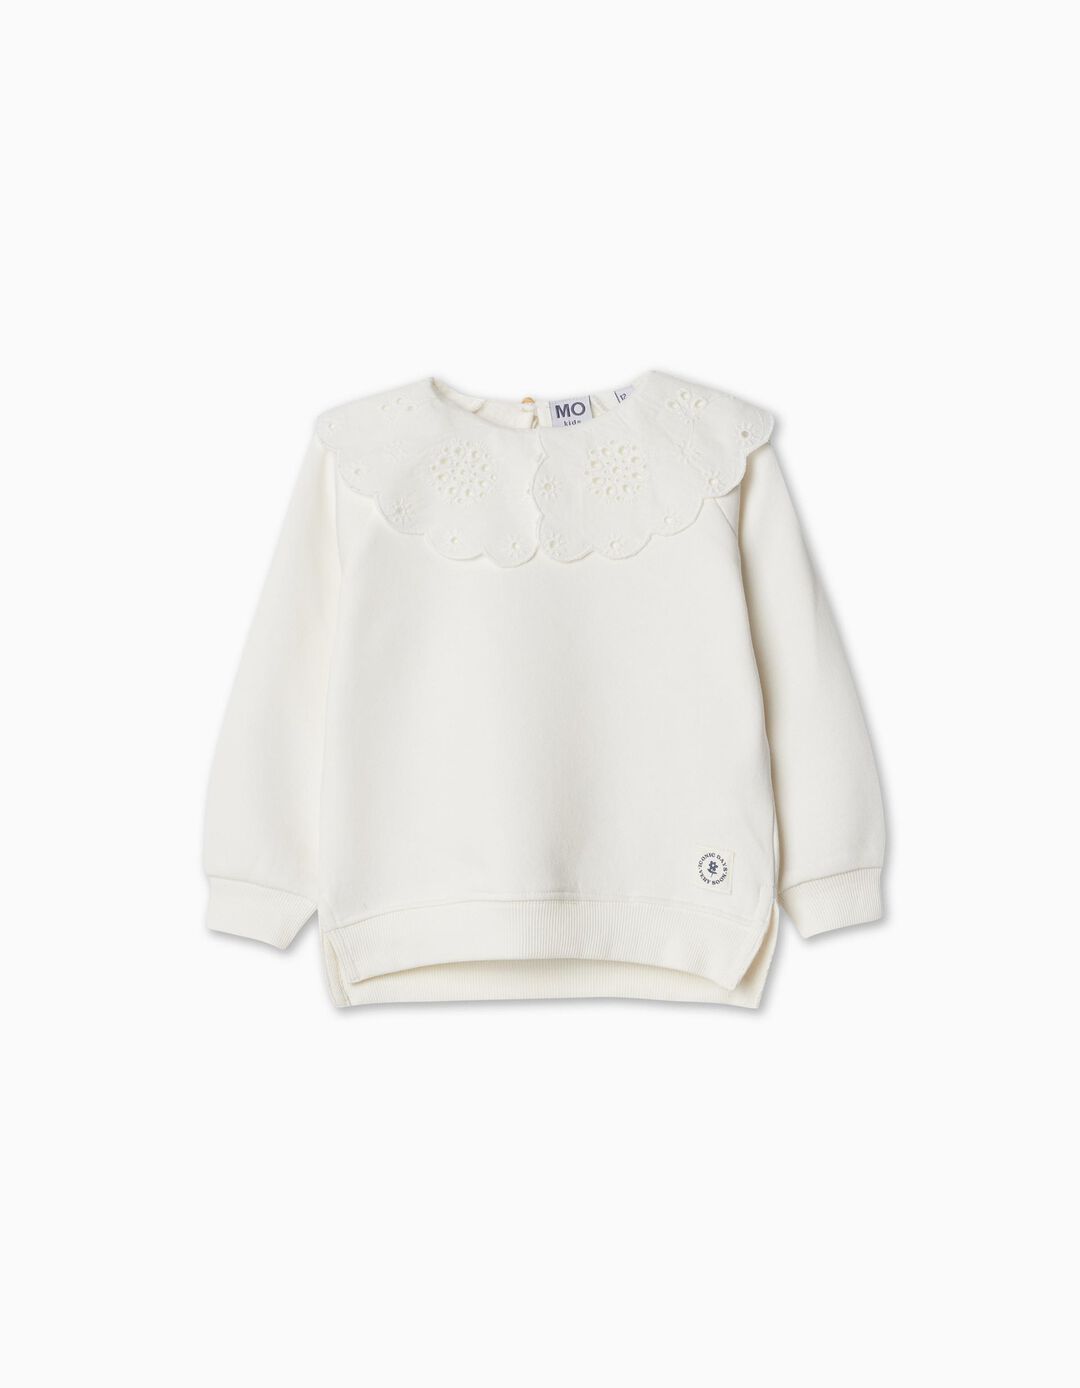 Sweatshirt de Felpa Bordado Suíço, Bebé Menina, Branco